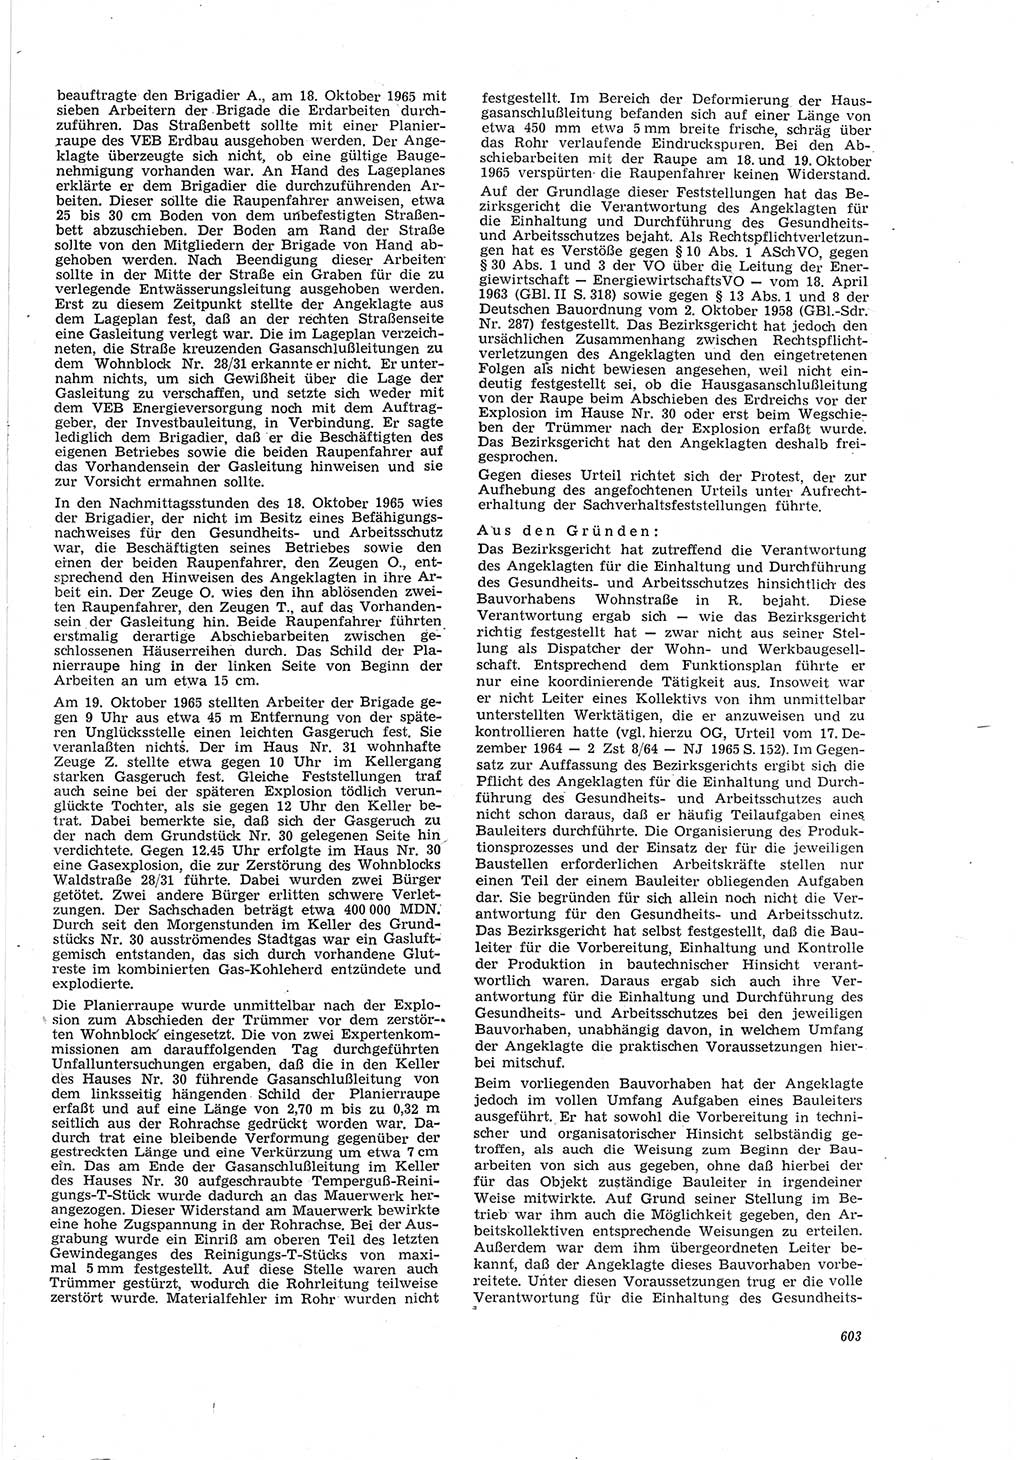 Neue Justiz (NJ), Zeitschrift für Recht und Rechtswissenschaft [Deutsche Demokratische Republik (DDR)], 20. Jahrgang 1966, Seite 603 (NJ DDR 1966, S. 603)